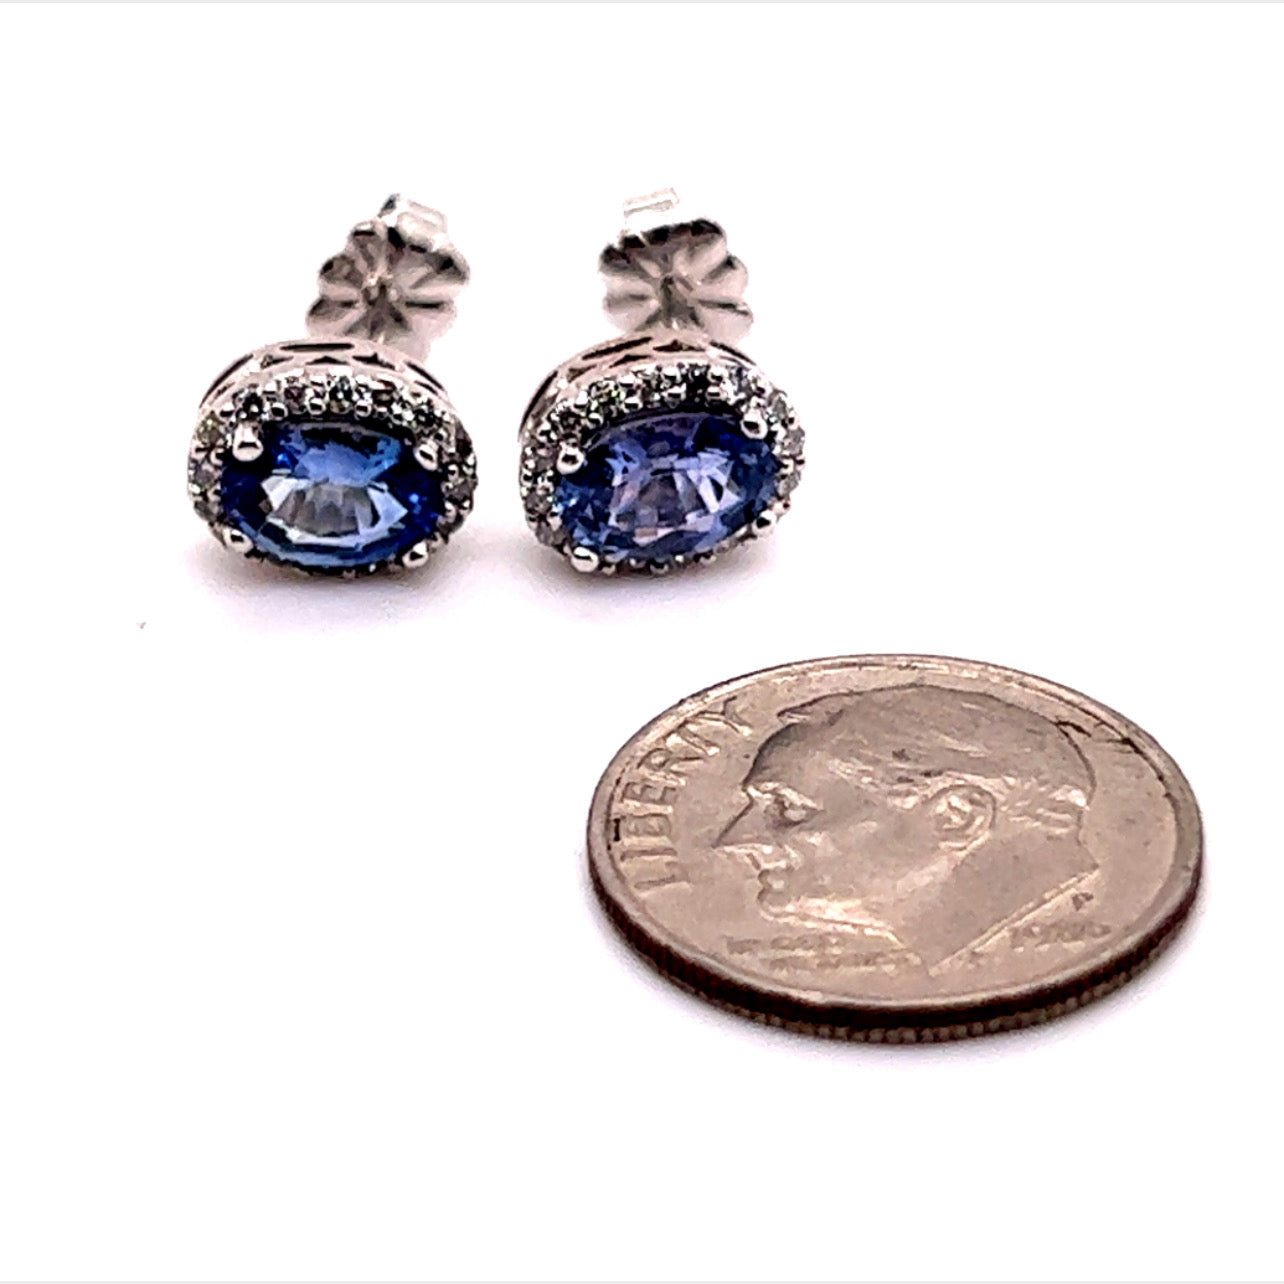 Natural Sapphire Diamond Earrings 14k Gold 1.73 TCW Certified $3,950 121272 - Certified Fine Jewelry